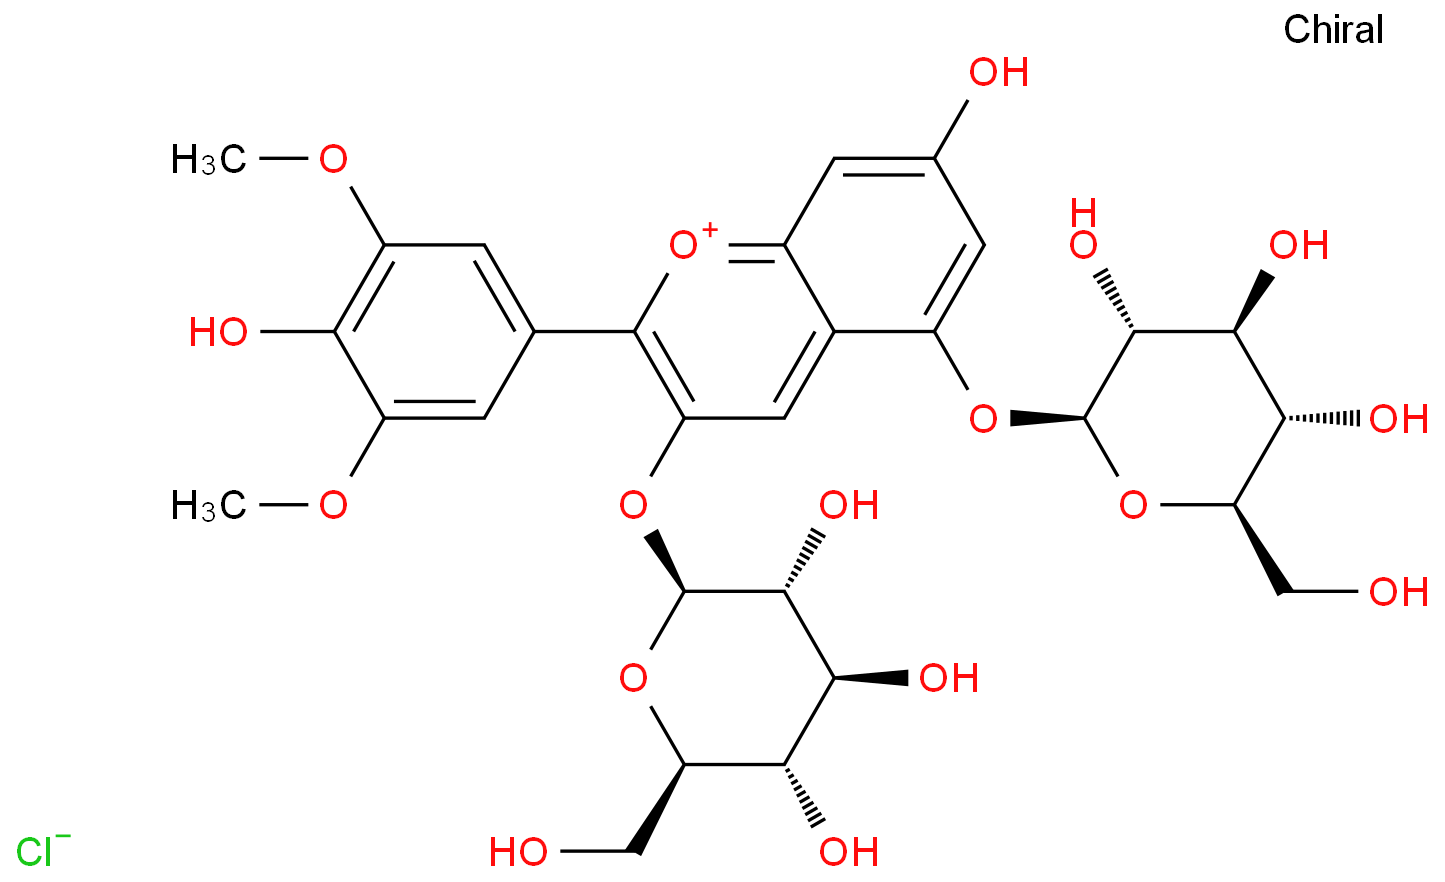 甲醛和乙醇反应的化学方程式